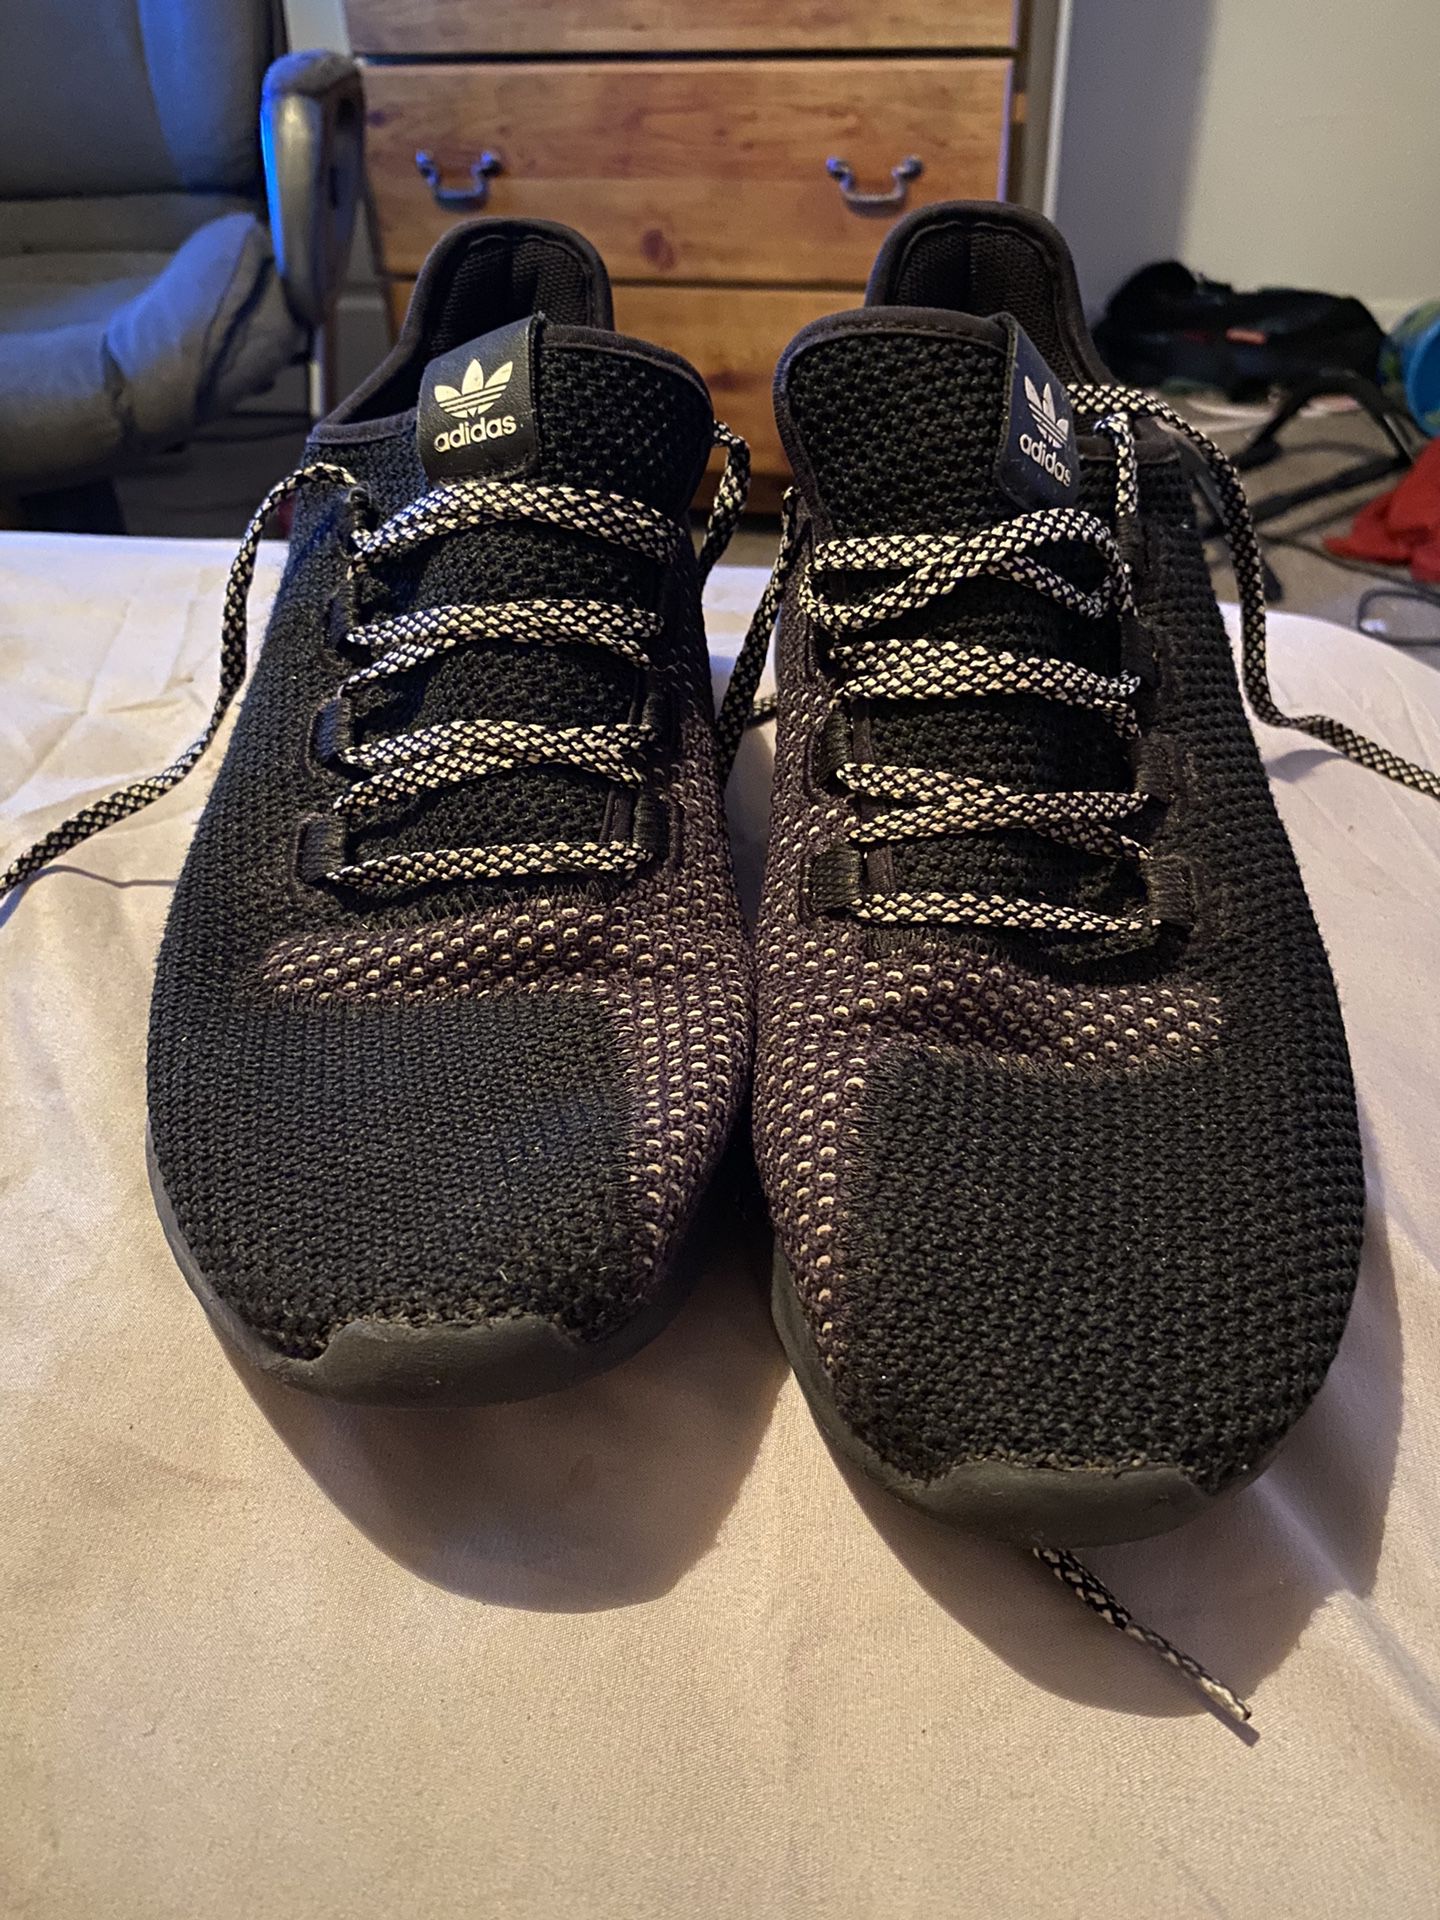 Adidas Tubular Athletic Shoes Size 10